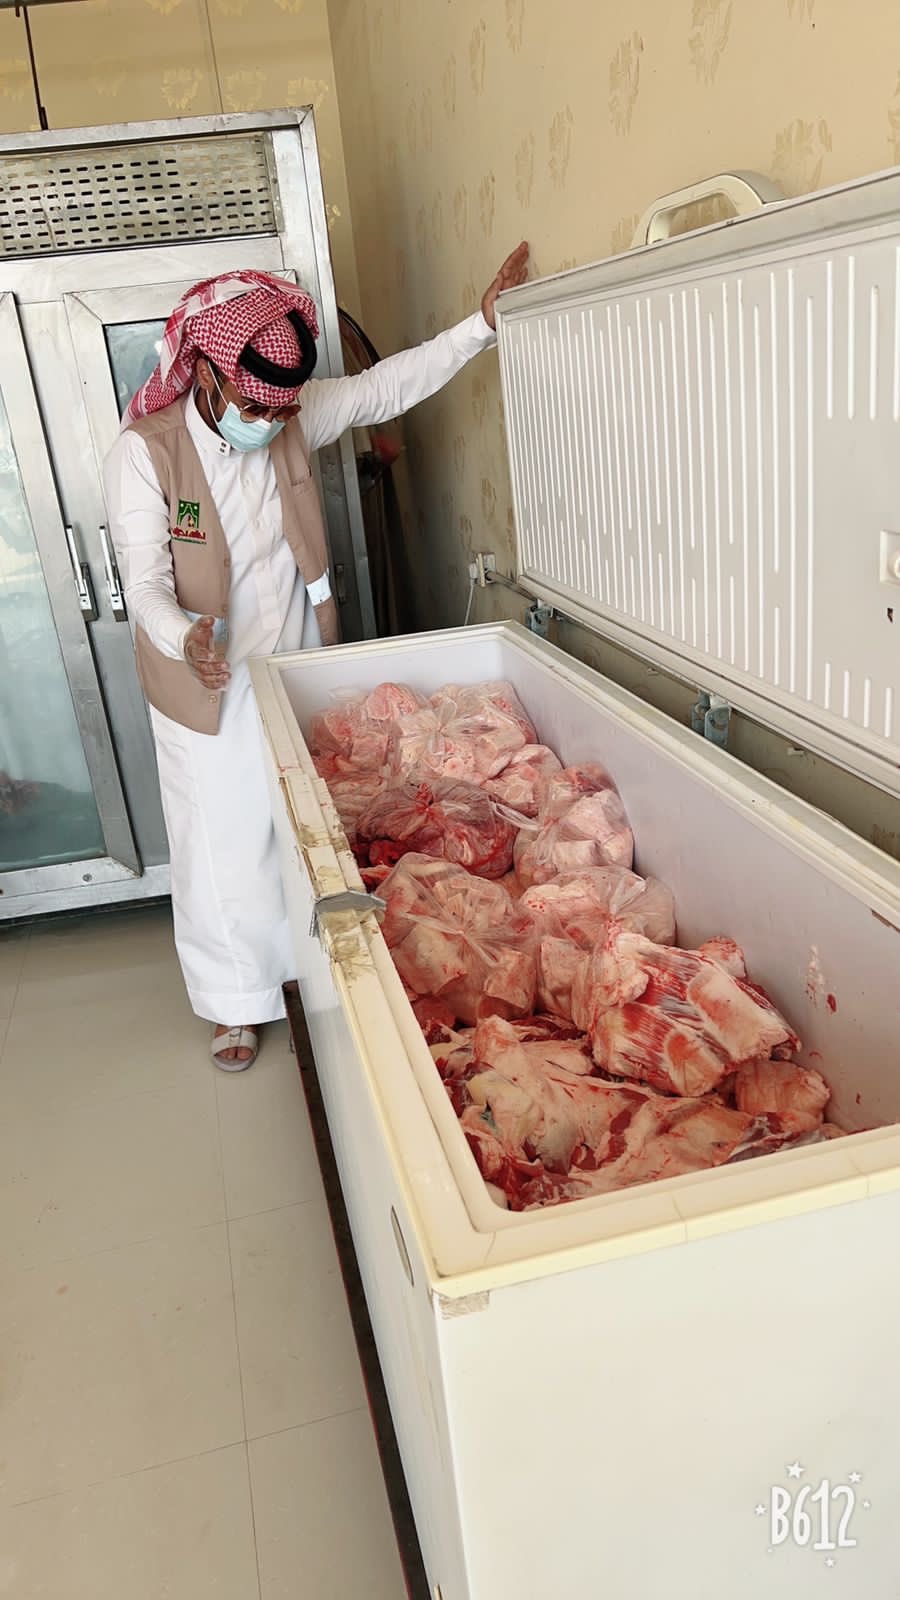 أمانة #نجران تضبط أكثر من 500 كجم من اللحوم مجهولة المصدر